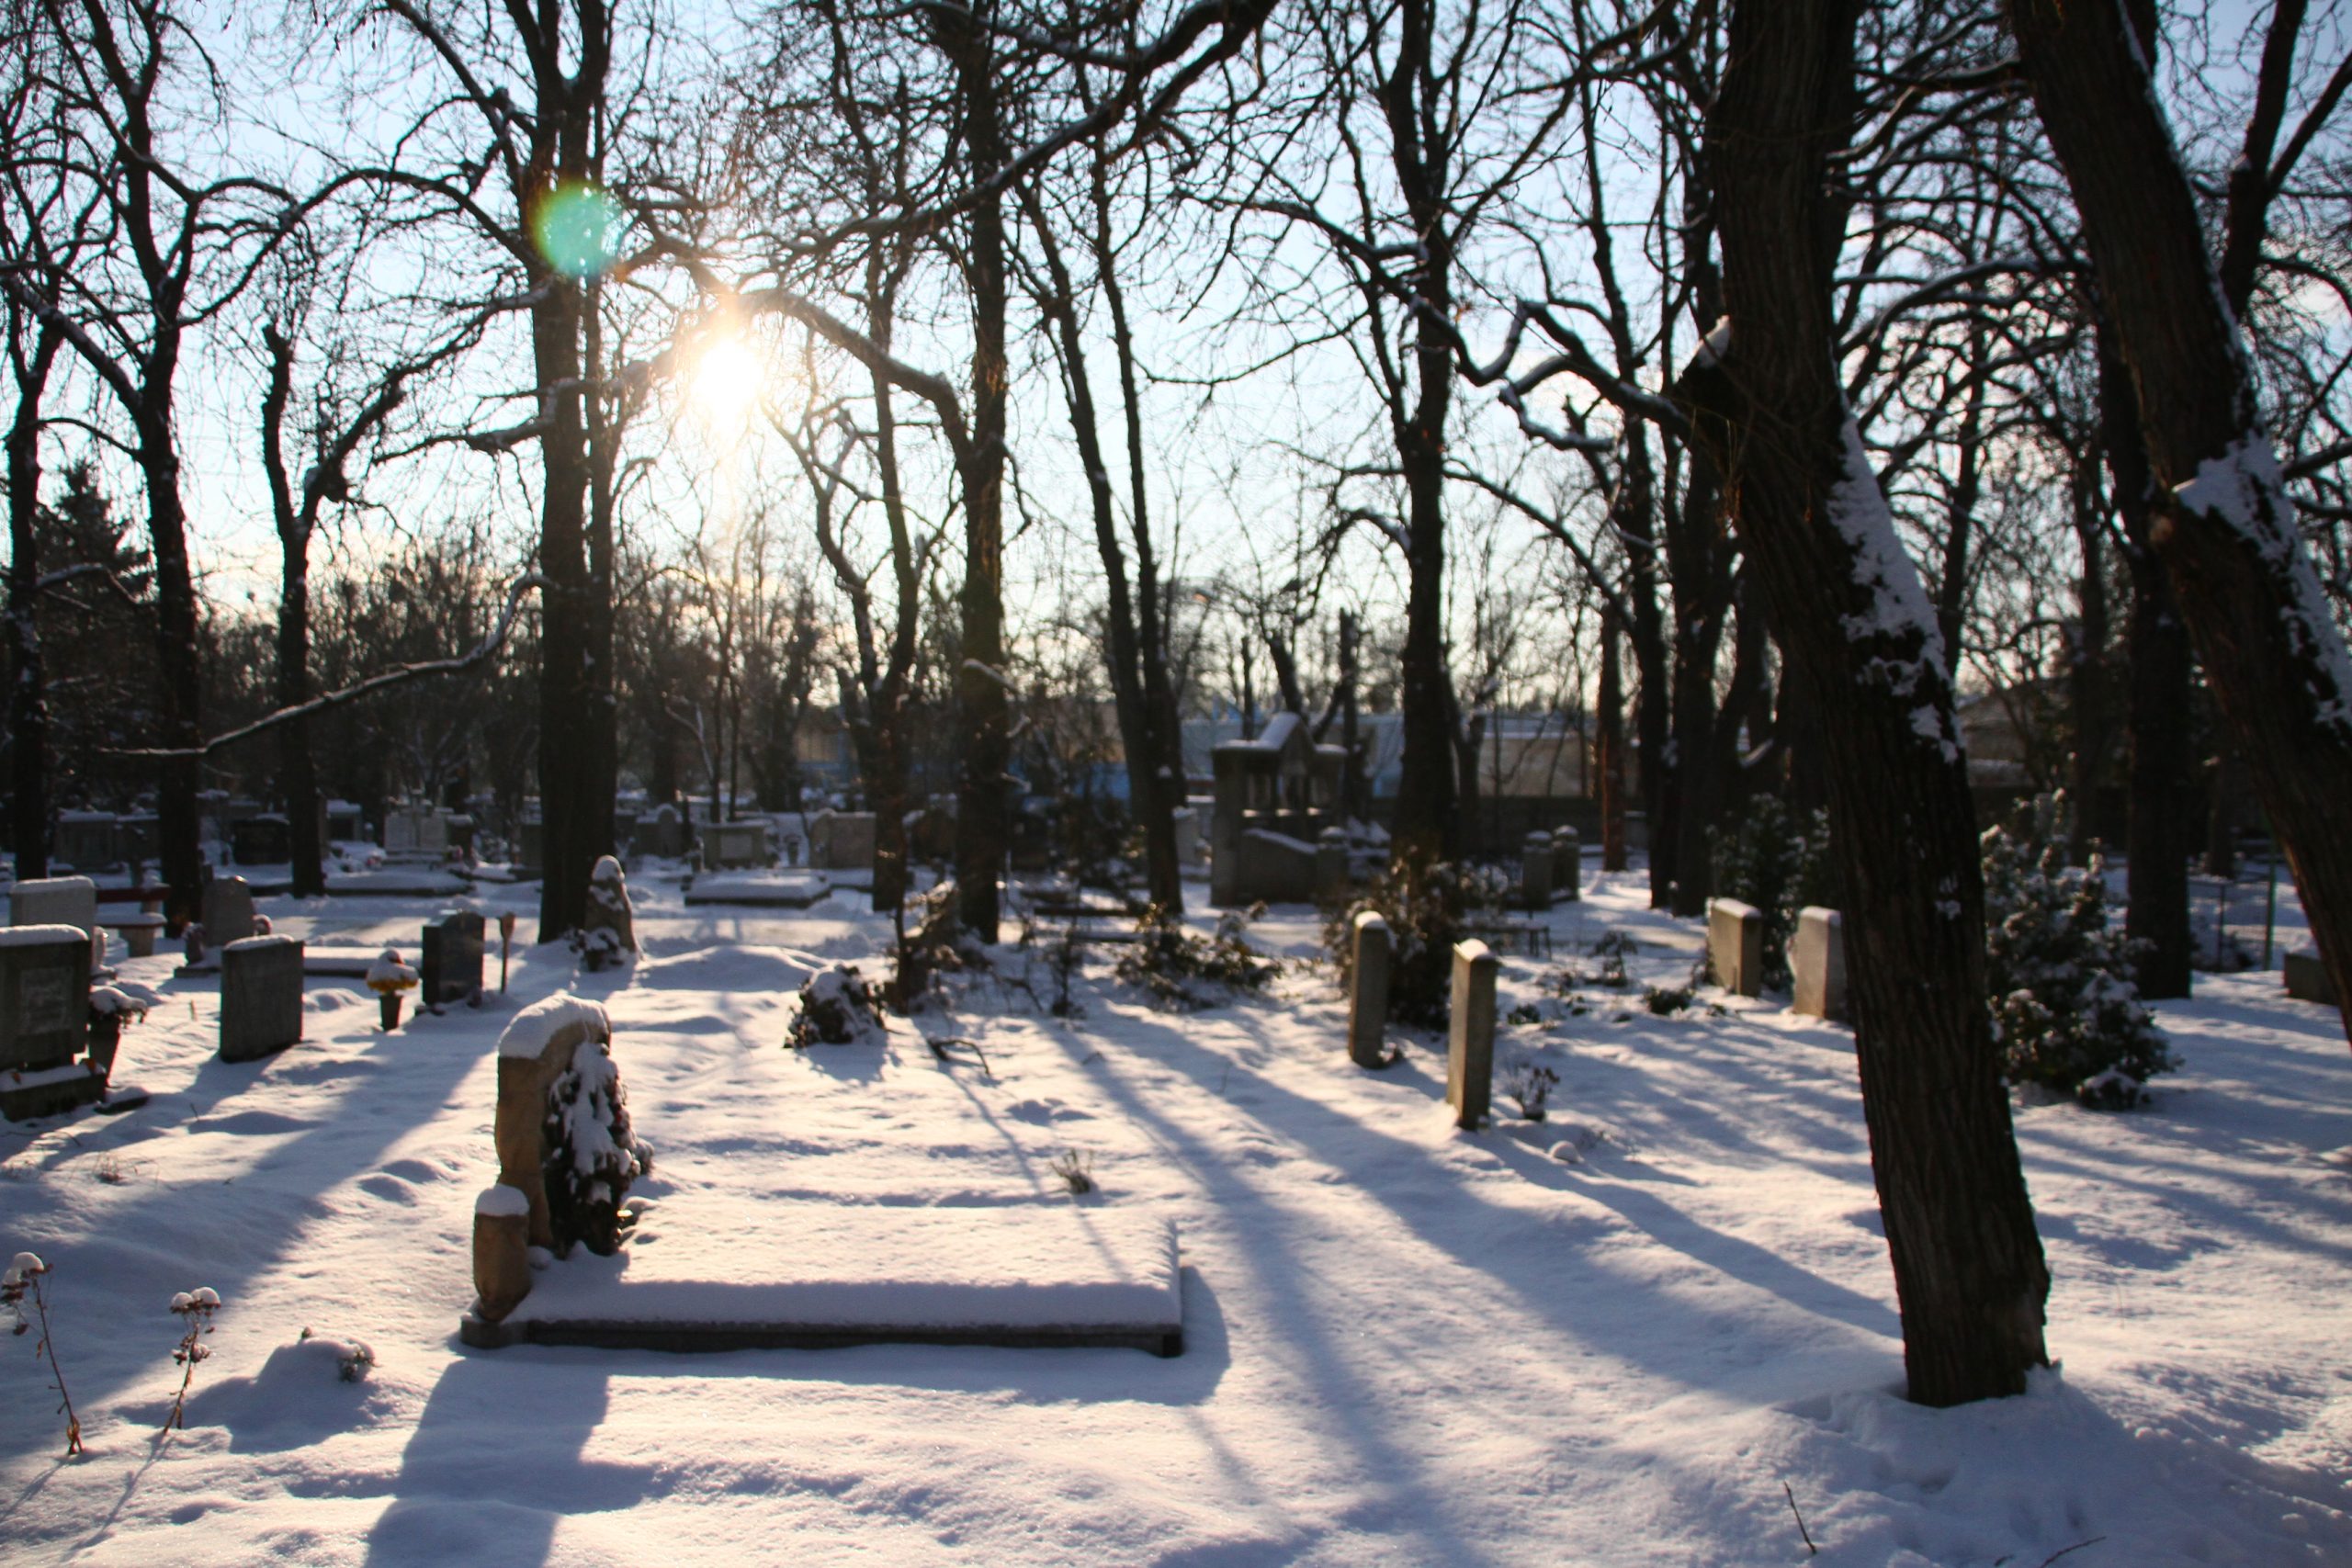 Kétes hátterű társaságok járják a temetőket, megrendelésre bármit ellopnak